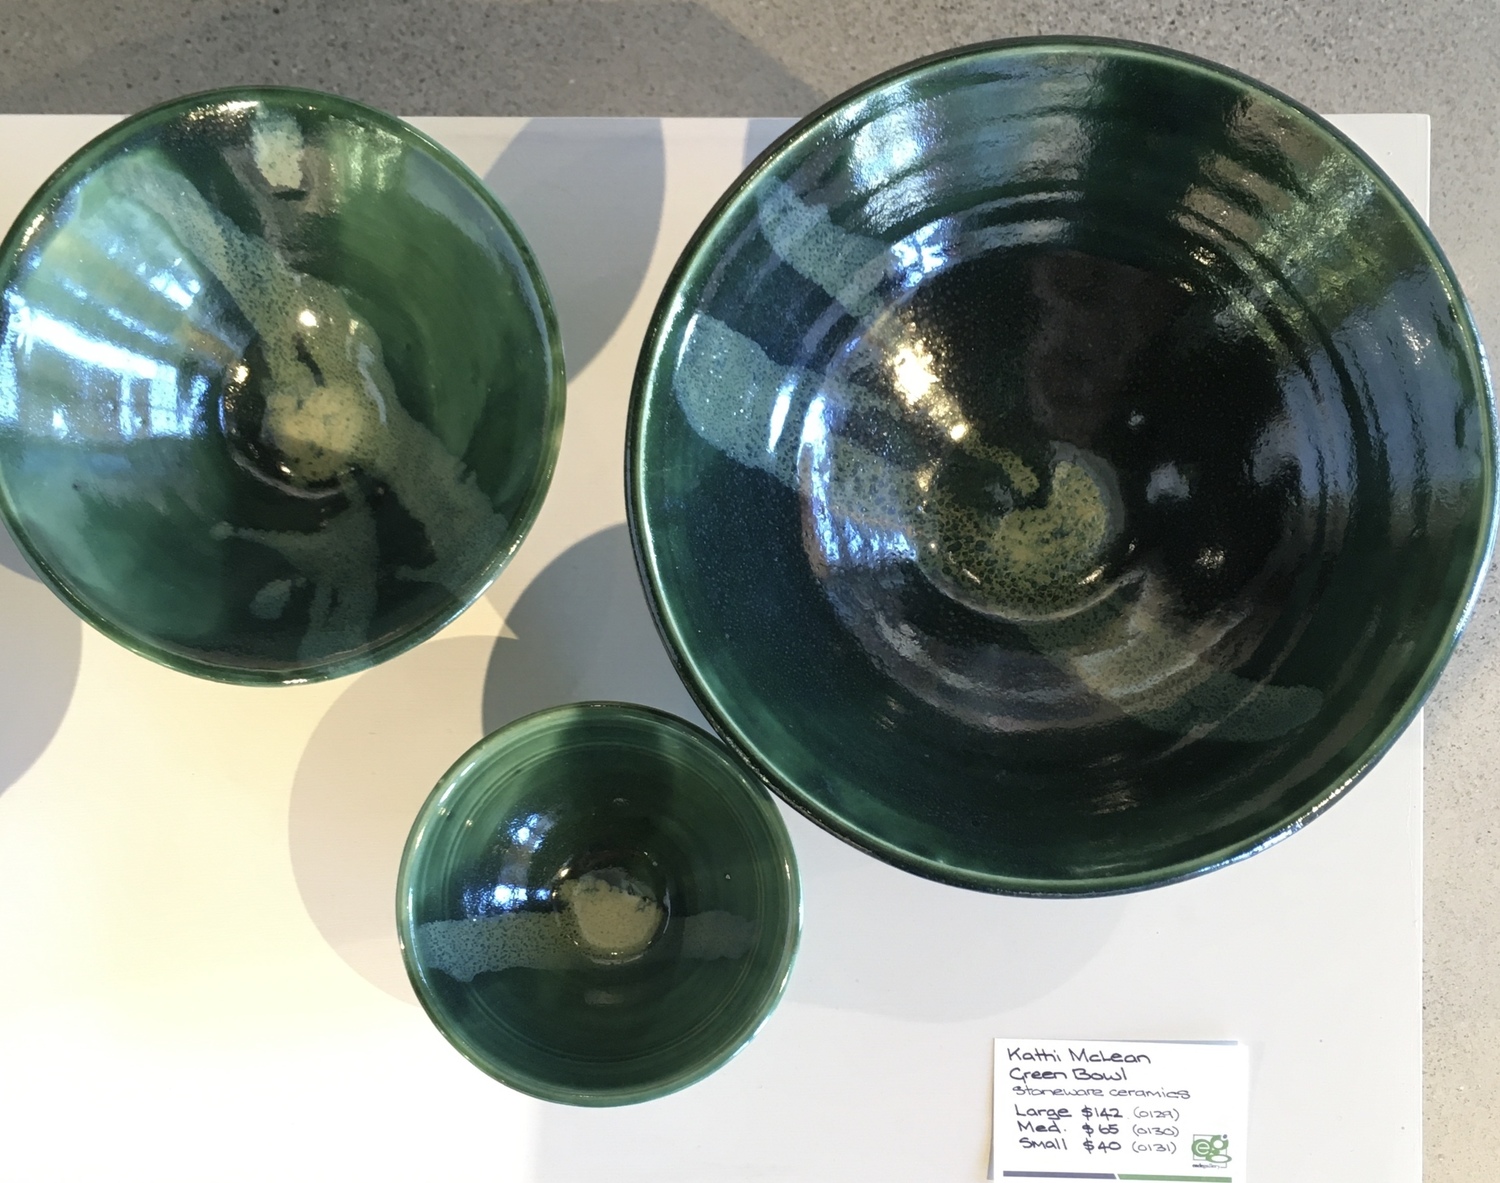 Green bowl - small